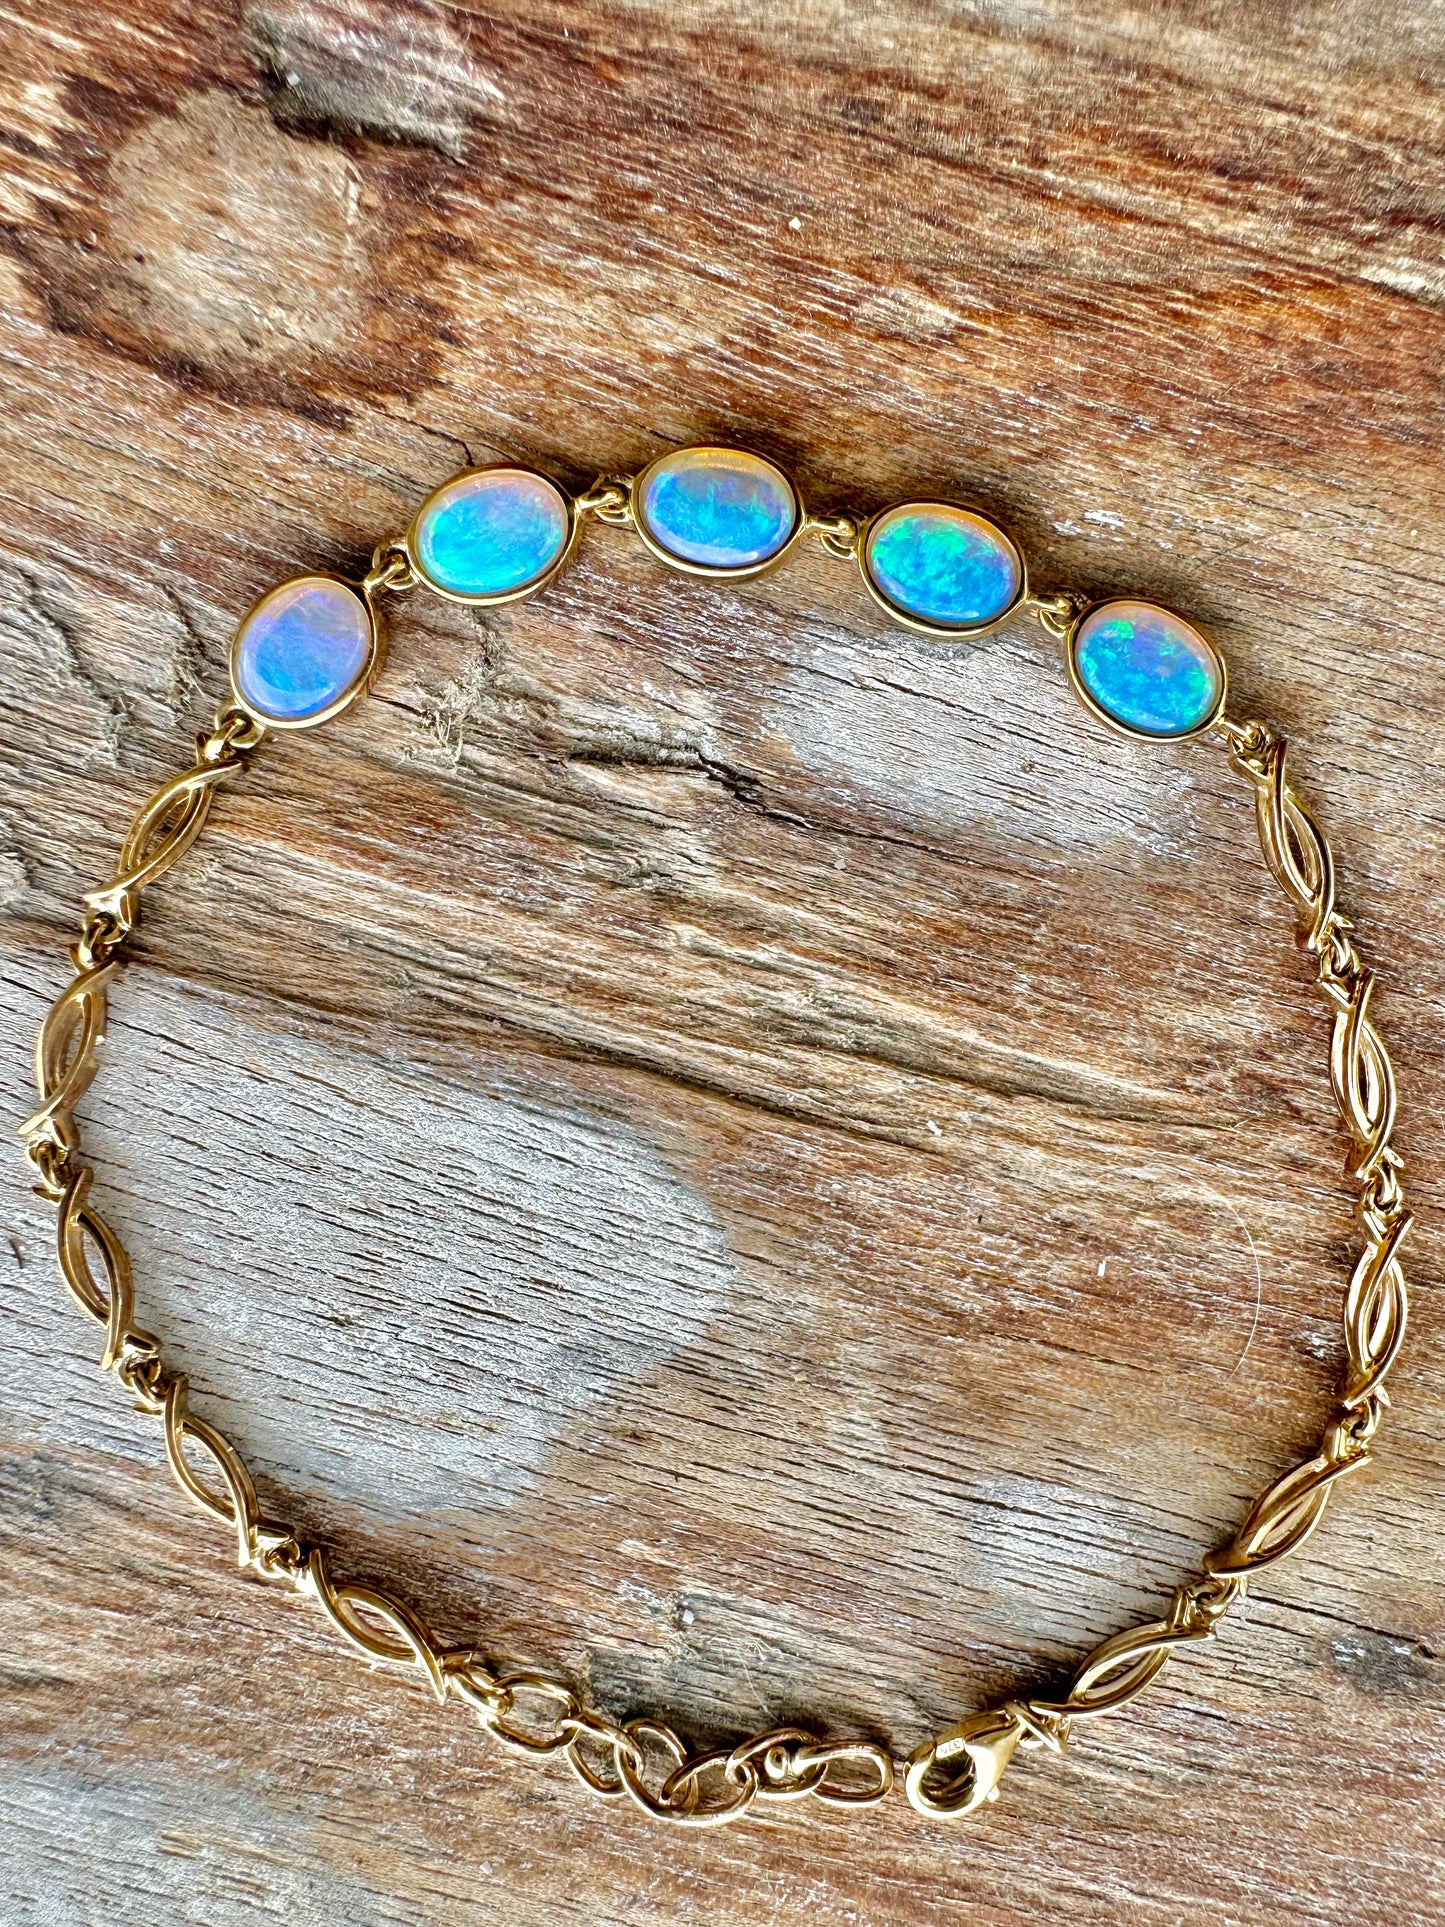 Opal bracelet set in 9k gold - Opal Essence Wholesalers 